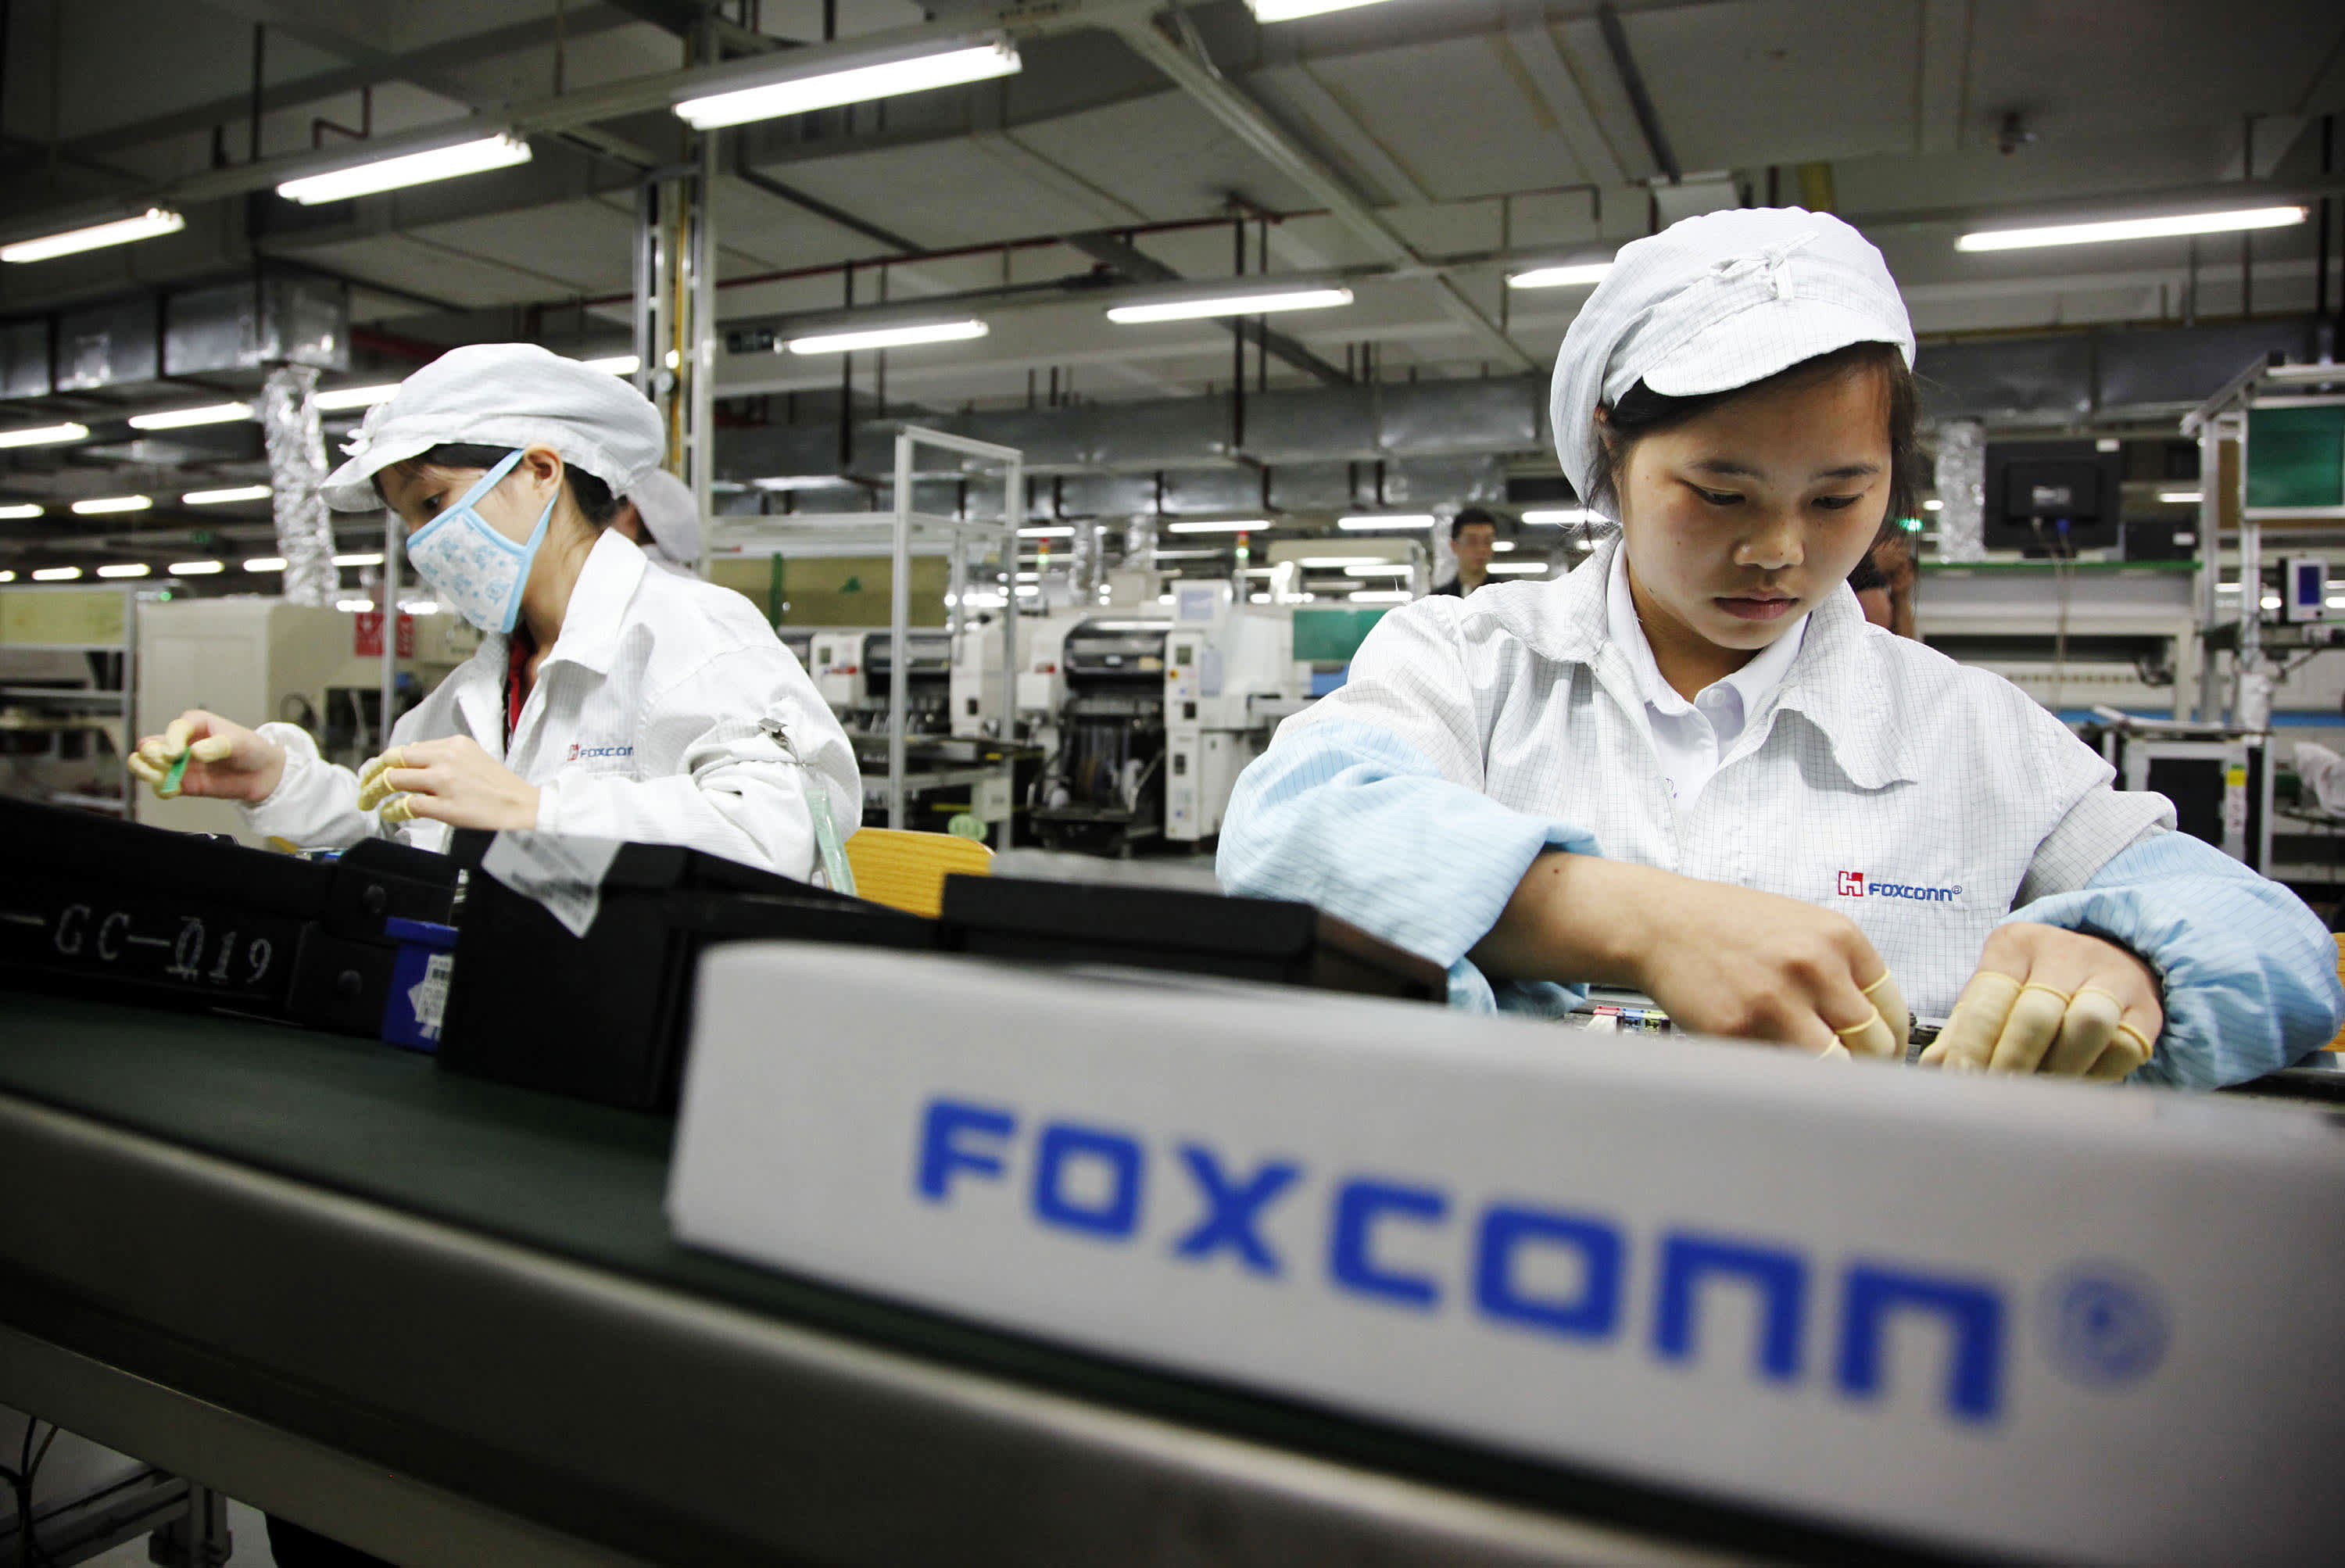 Des milliers d'employés licenciés de la plus grande usine de Foxconn, les livraisons d'iPhone sont menacées